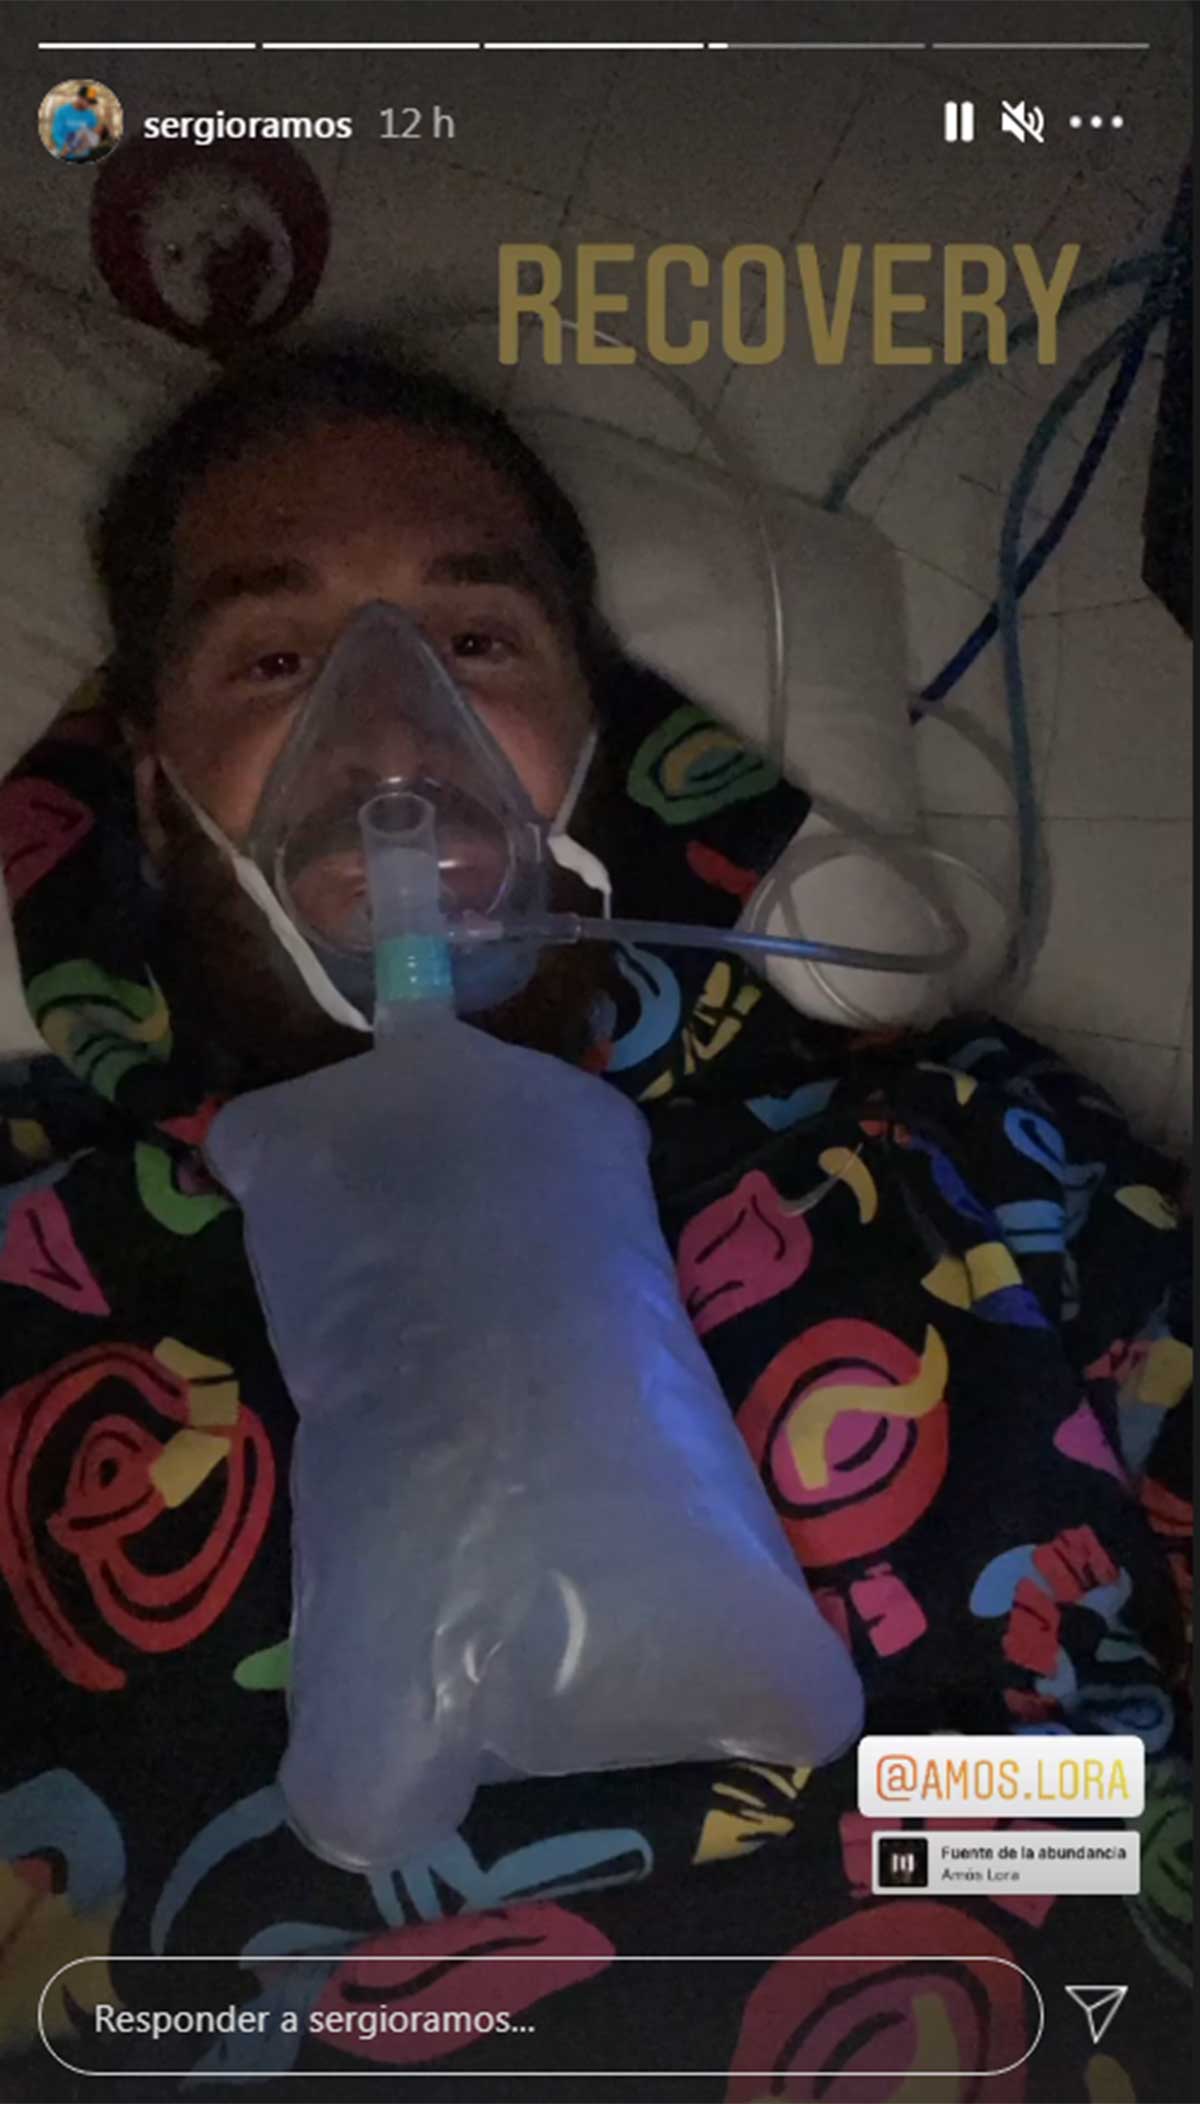 La imagen de Sergio Ramos recibiendo oxígeno que ha preocupado a todos